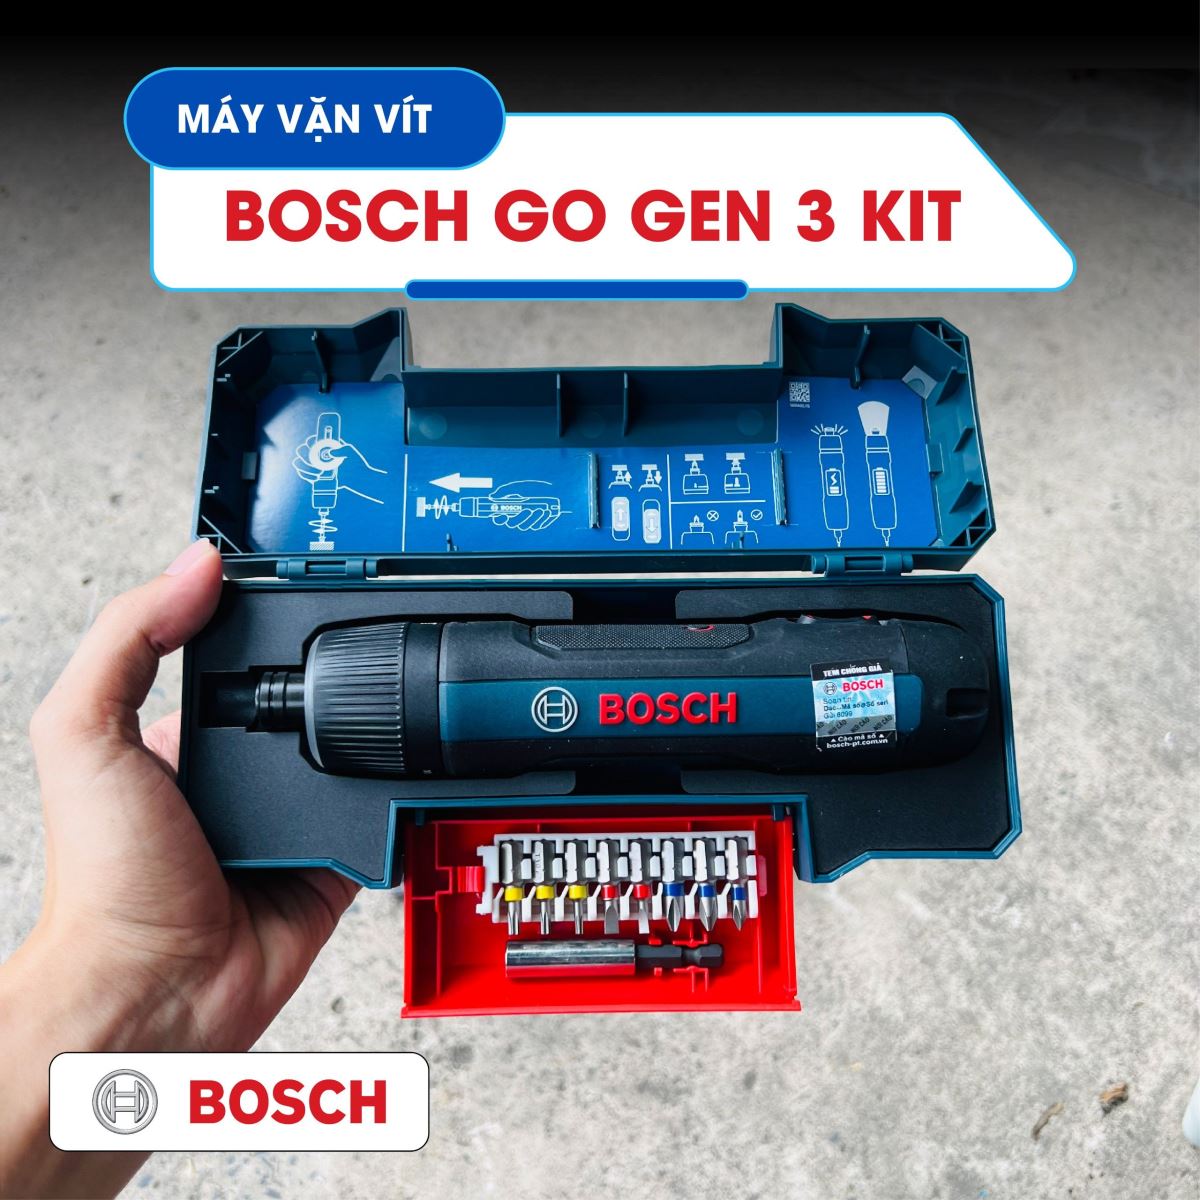 Máy bắn vít dùng pin Bosch Go Gen 3 KIT